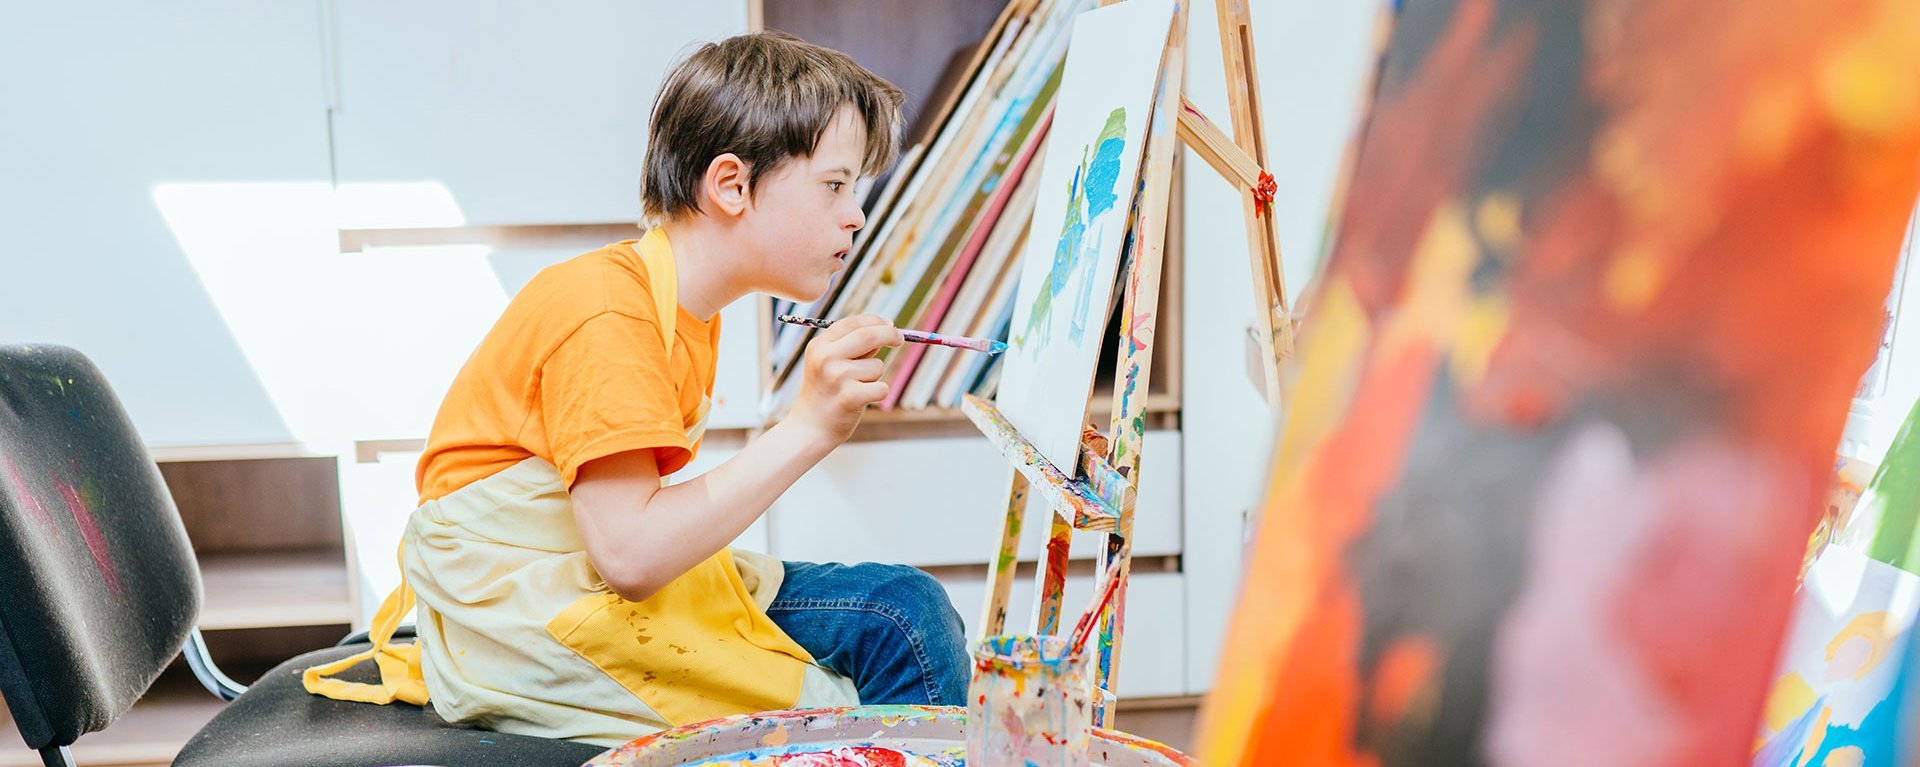 Kreativ: Ein Junge sitzt an einer Staffelei und malt mit Acrylfarben konzentriert ein Bild